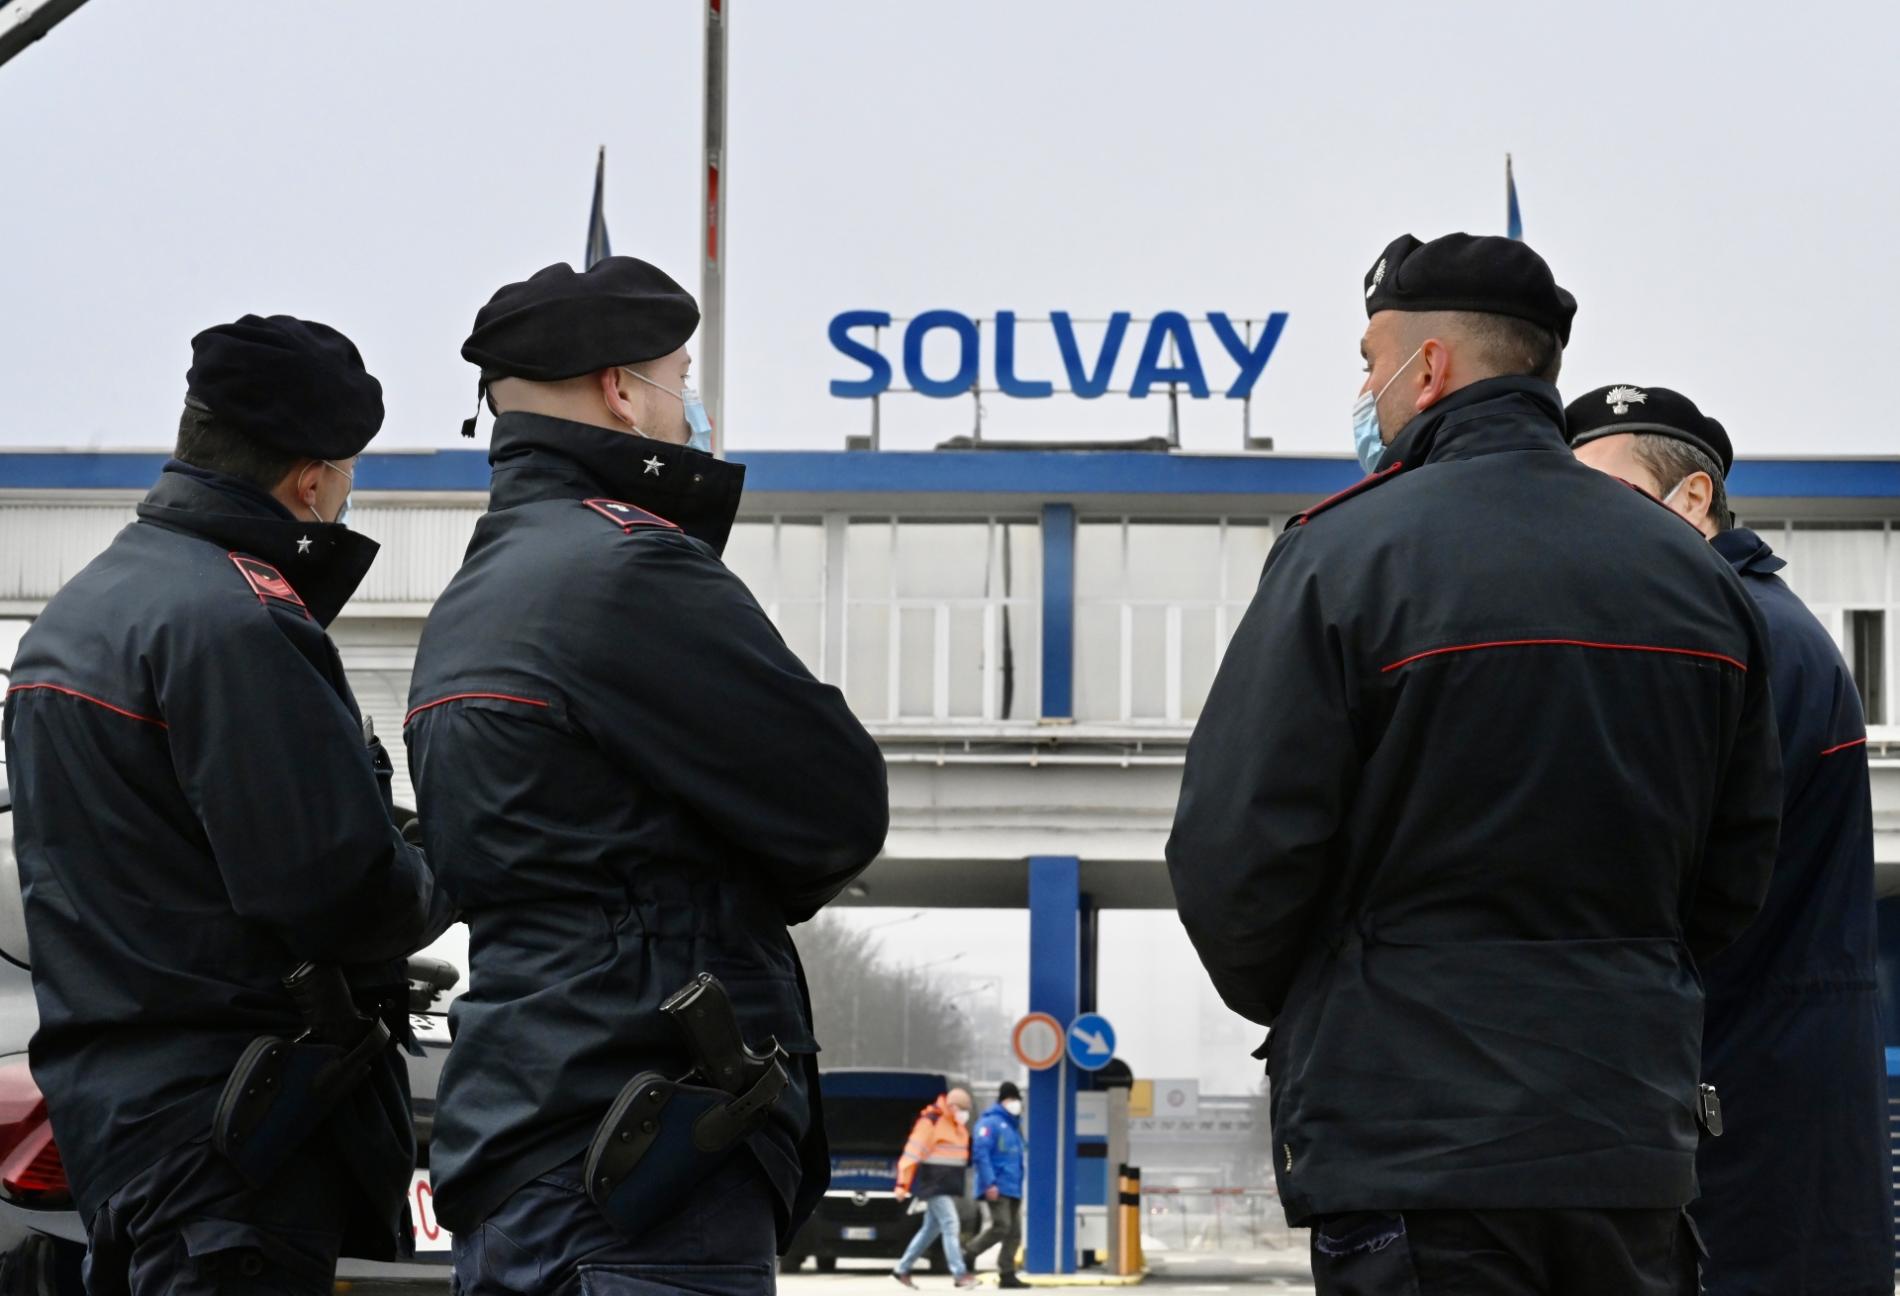 Solvay e la chiusura dell’inchiesta: “Le imputazioni appaiono ridimensionate”